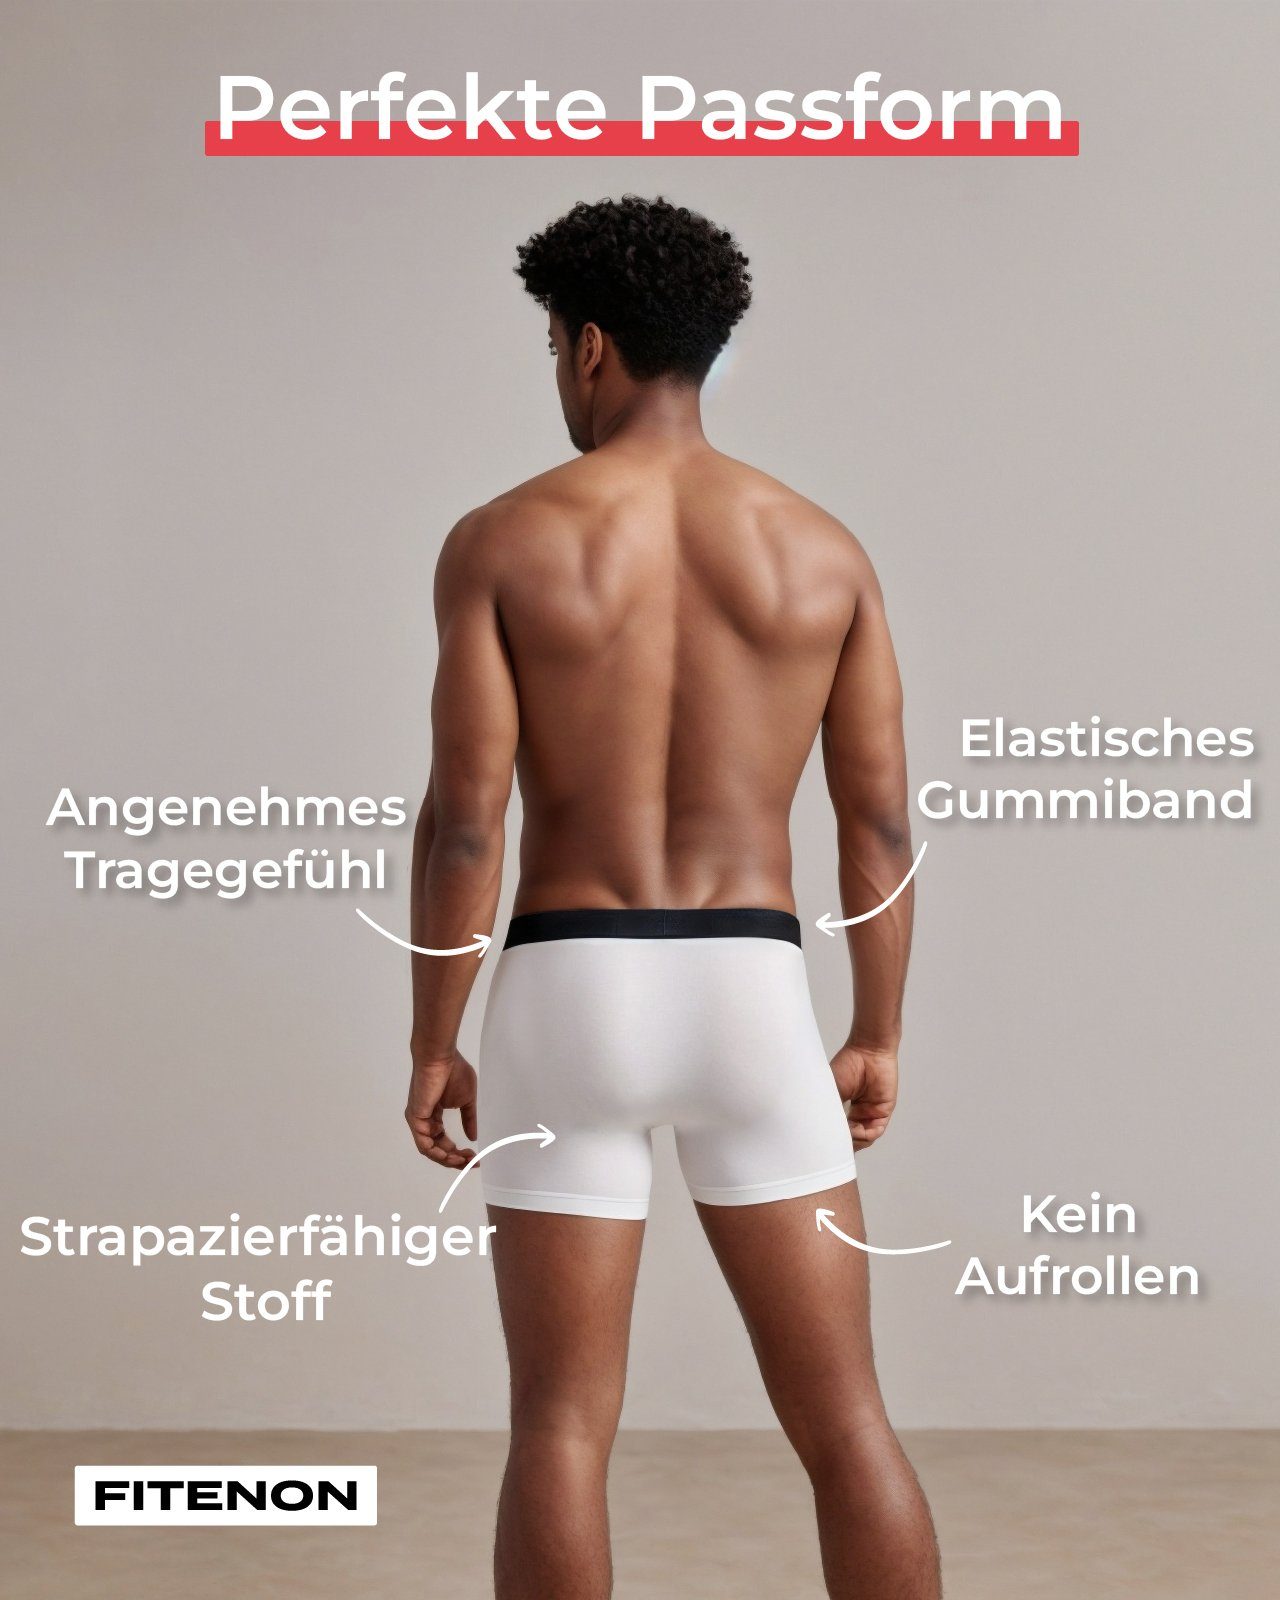 FITENON Boxershorts Herren Logo-Elastikbund (6 mit 2x Set) Schwarz ohne Unterwäsche, kratzenden gestreift 4x Unterhosen, er Zettel, Baumwolle Schwarz